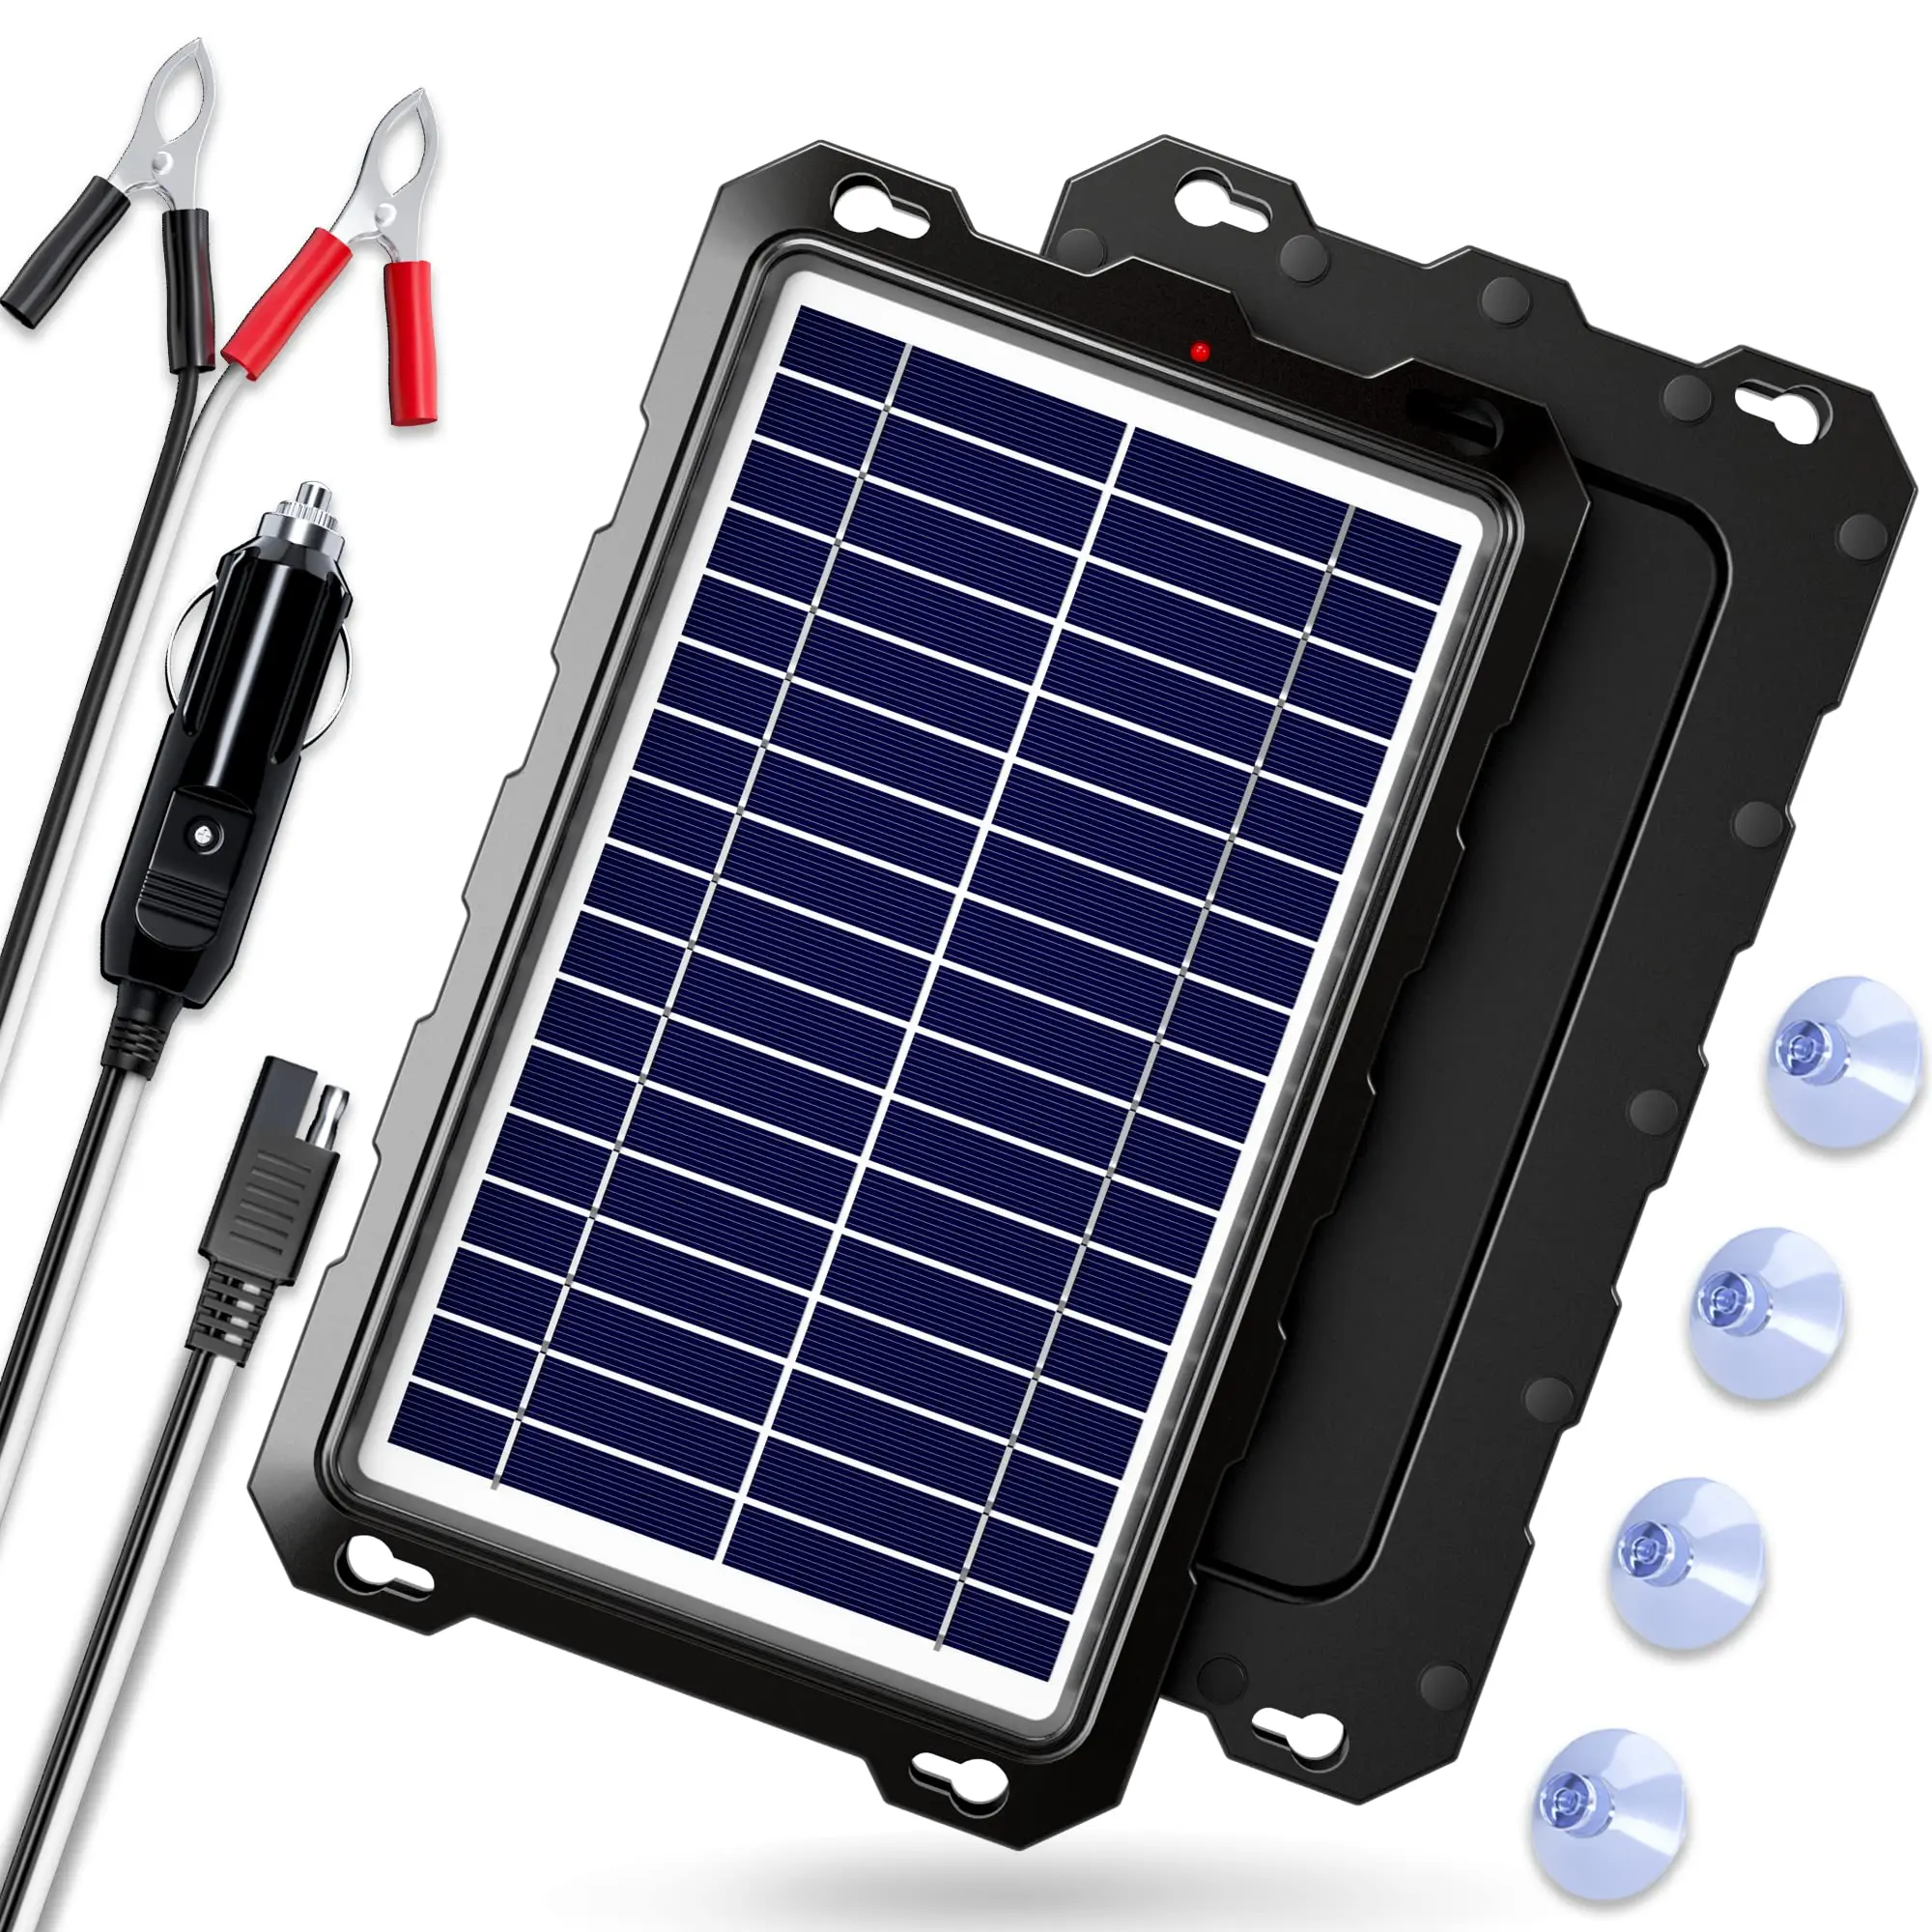 conectar powerbank placa solar 12v - Cuánto tiempo tarda en cargar un Power Bank solar